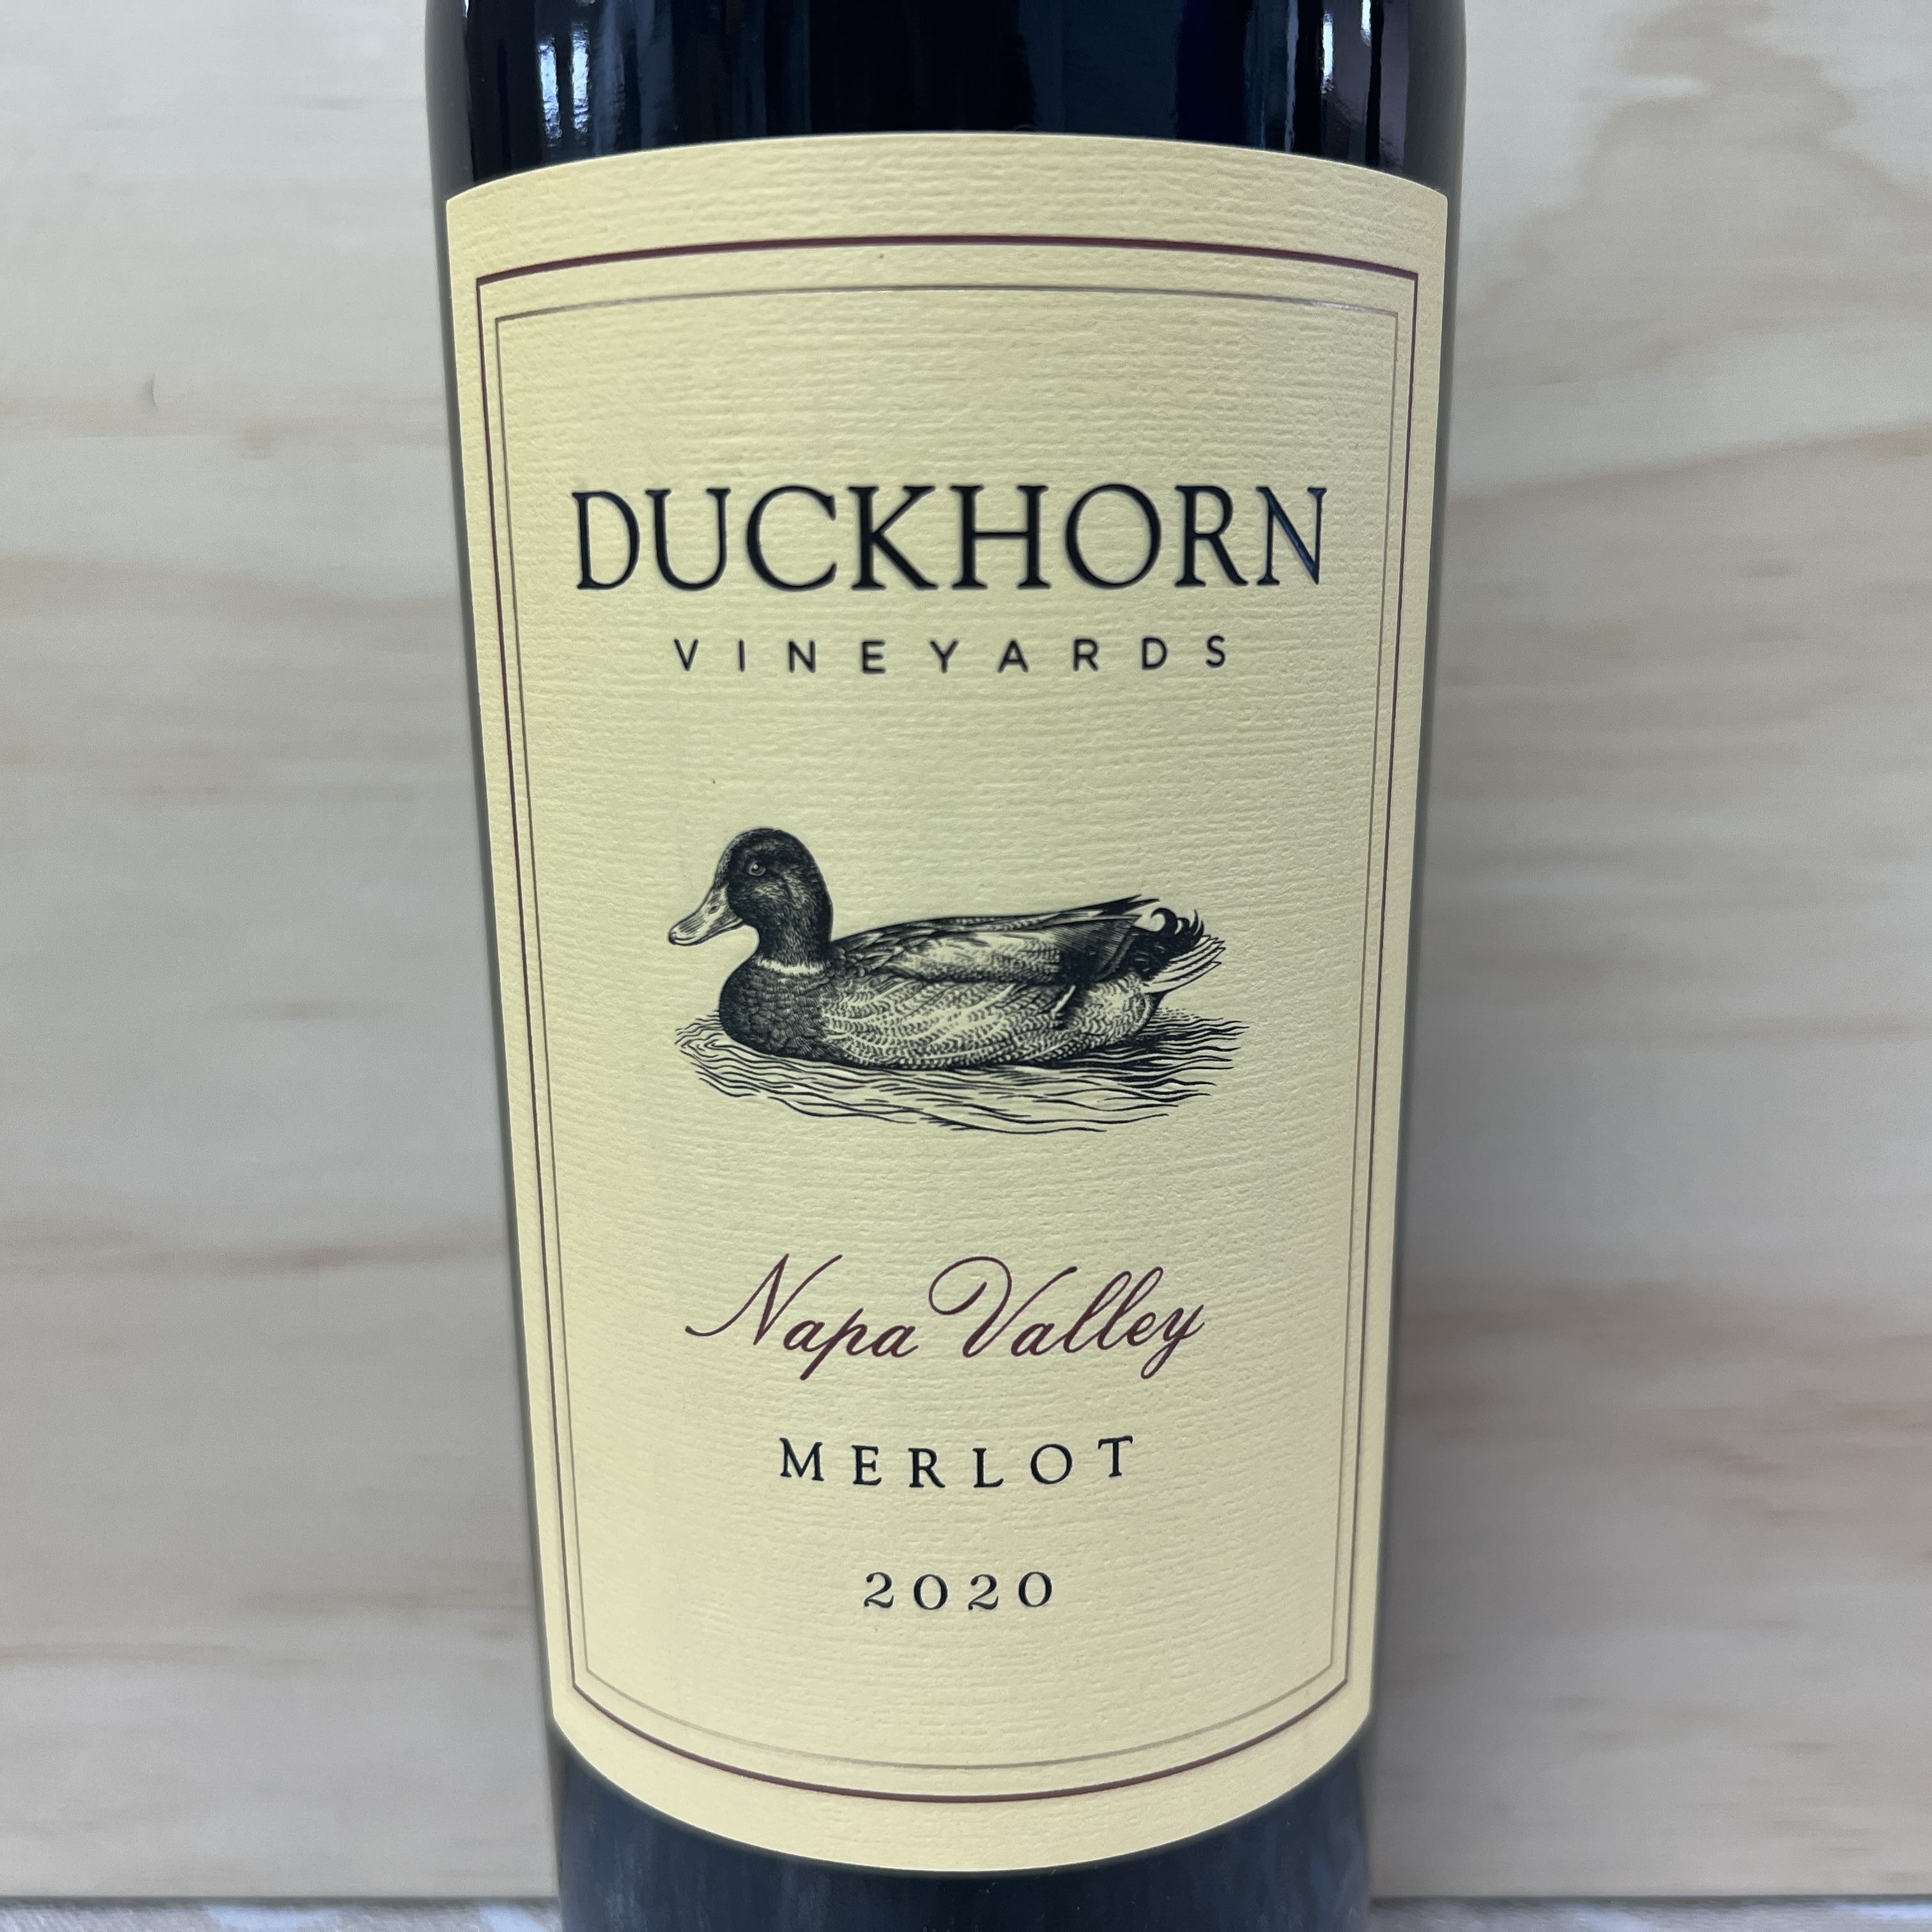 Duckhorn Napa Valley Merlot 2020